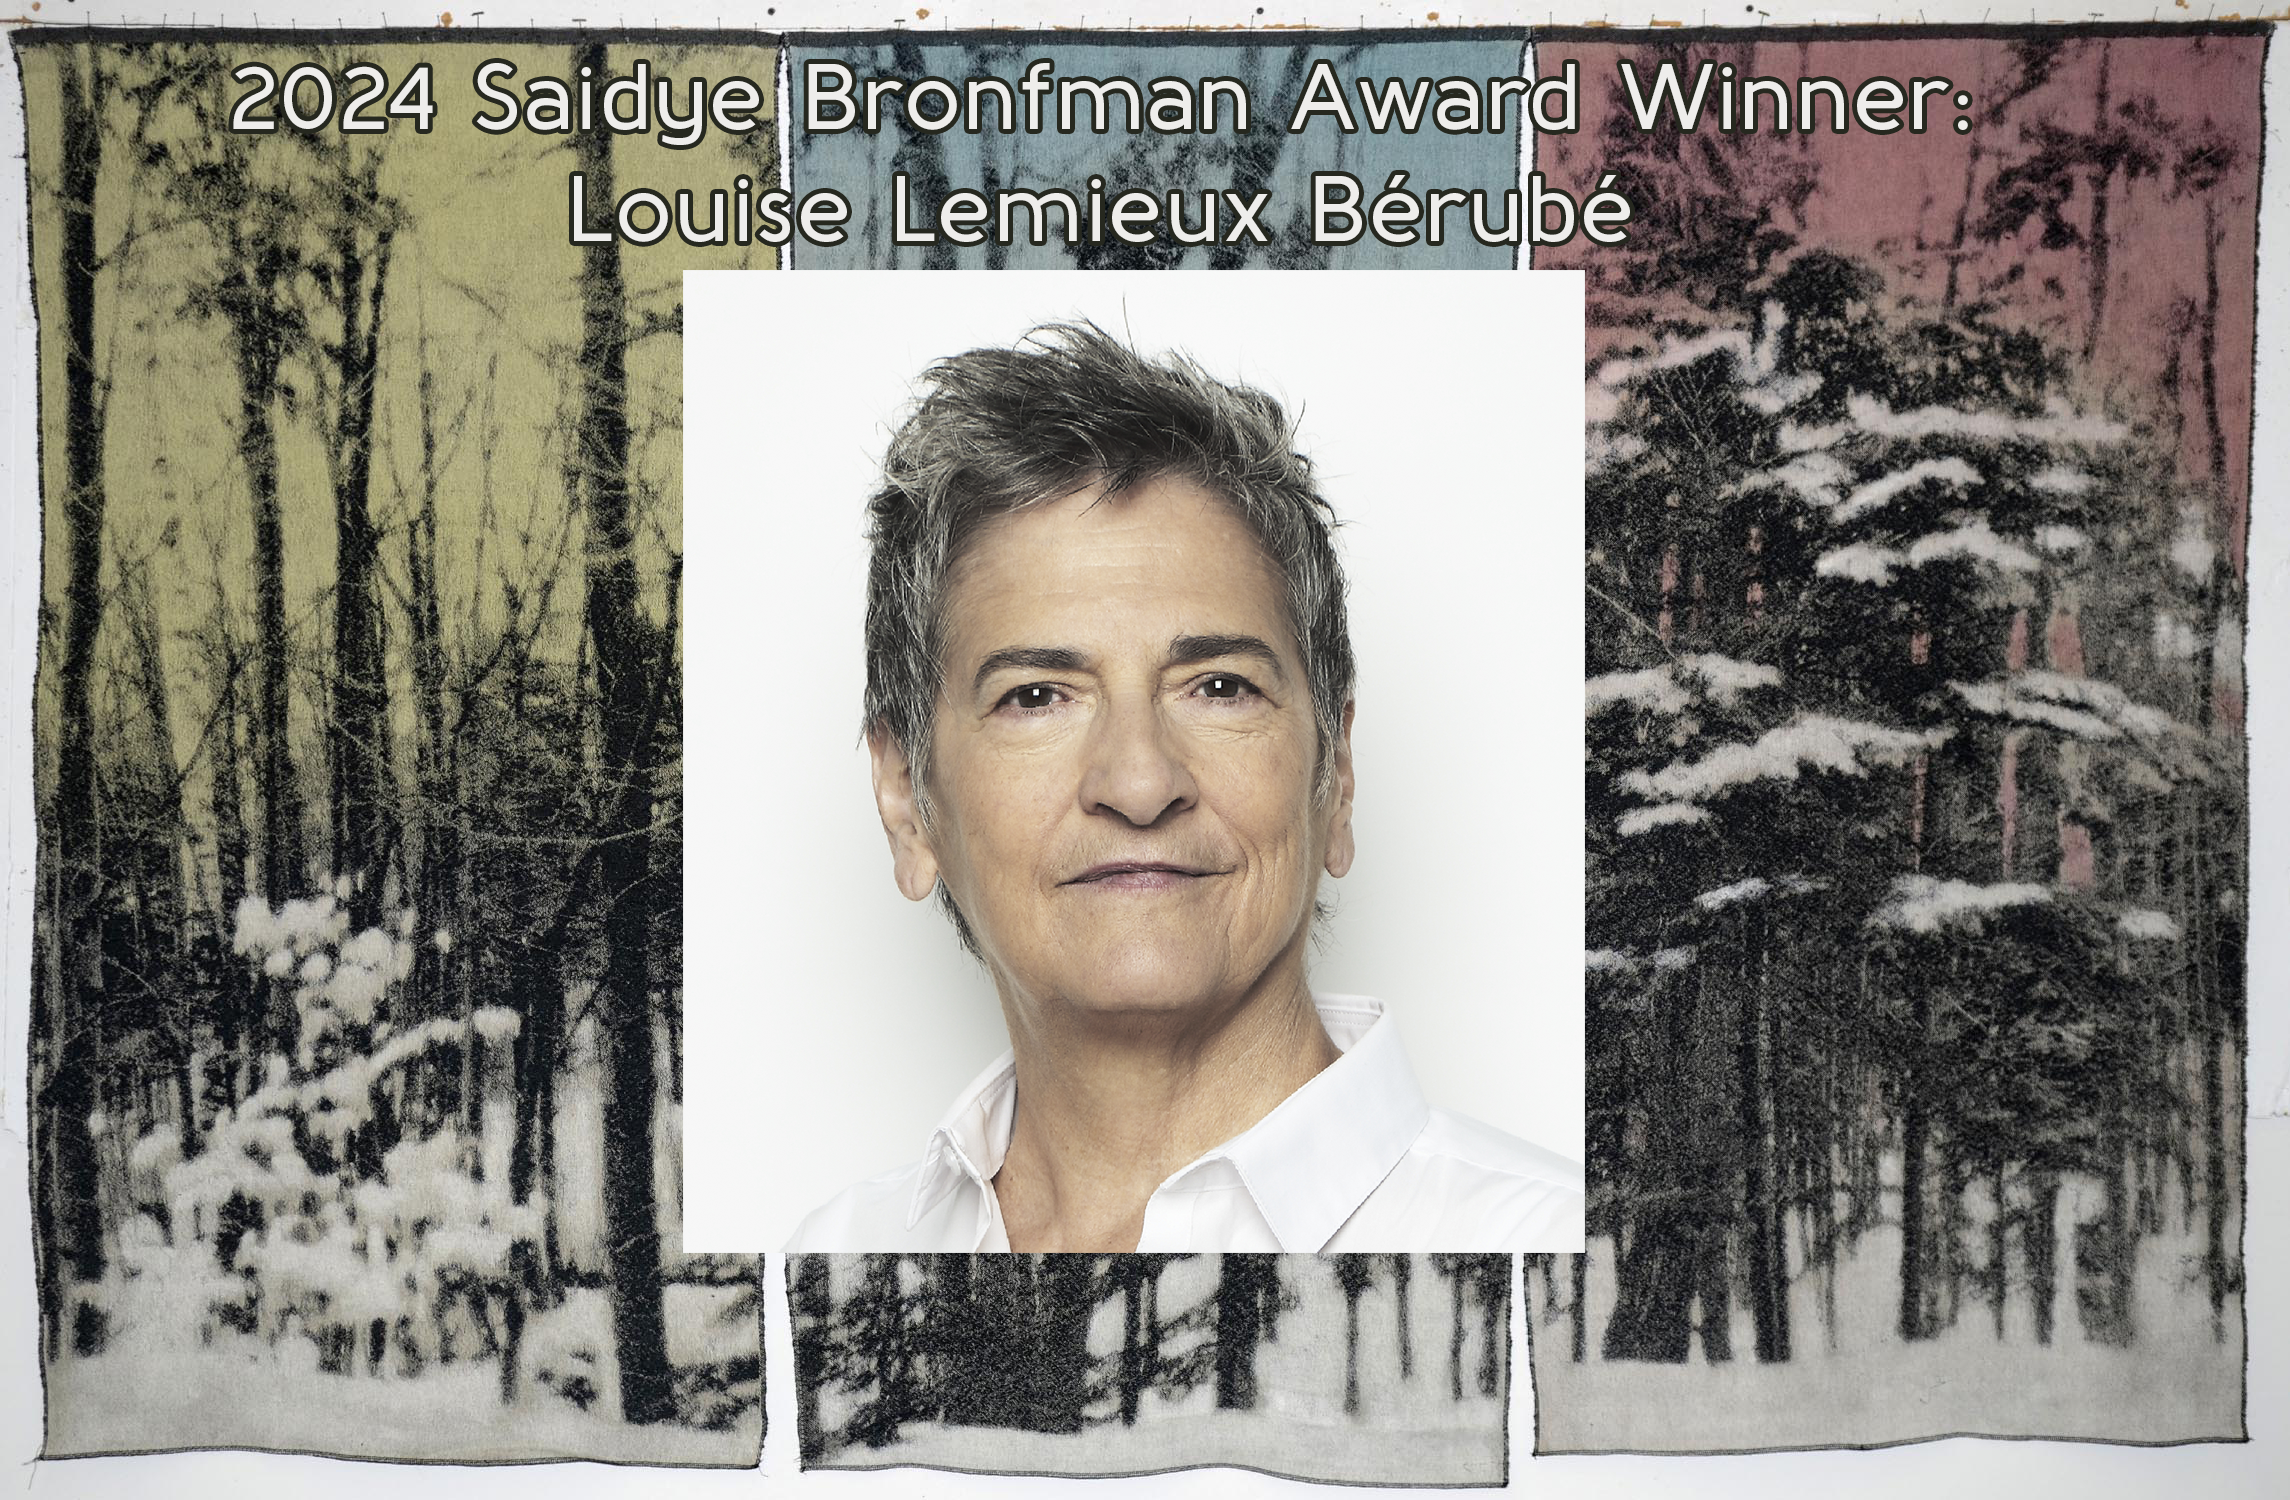 Louise Lemieux Bérubé wins the 2024 Saidye Bronfman Award!